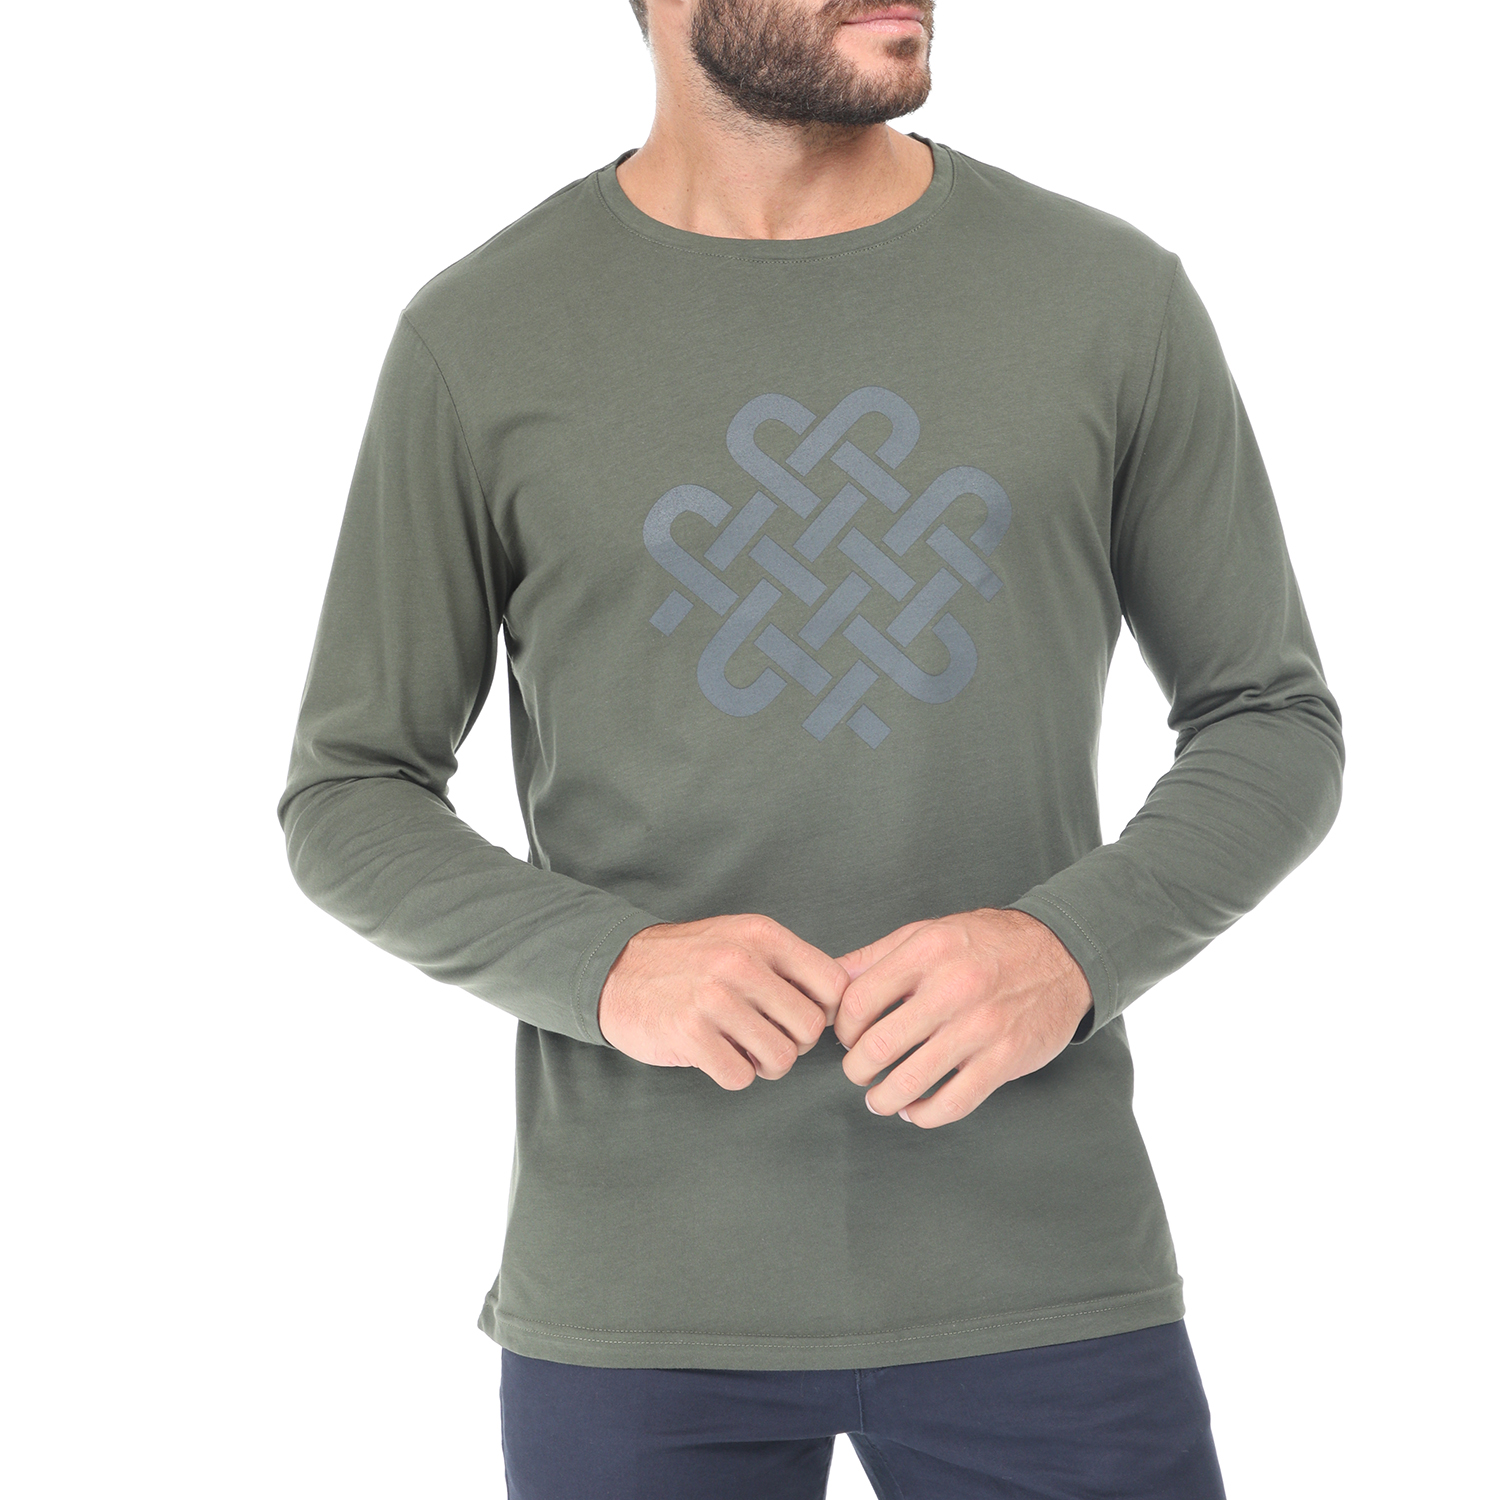 Ανδρικά/Ρούχα/Μπλούζες/Μακρυμάνικες DORS - Ανδρική μακρυμάνικη μπλούζα DORS πράσινη